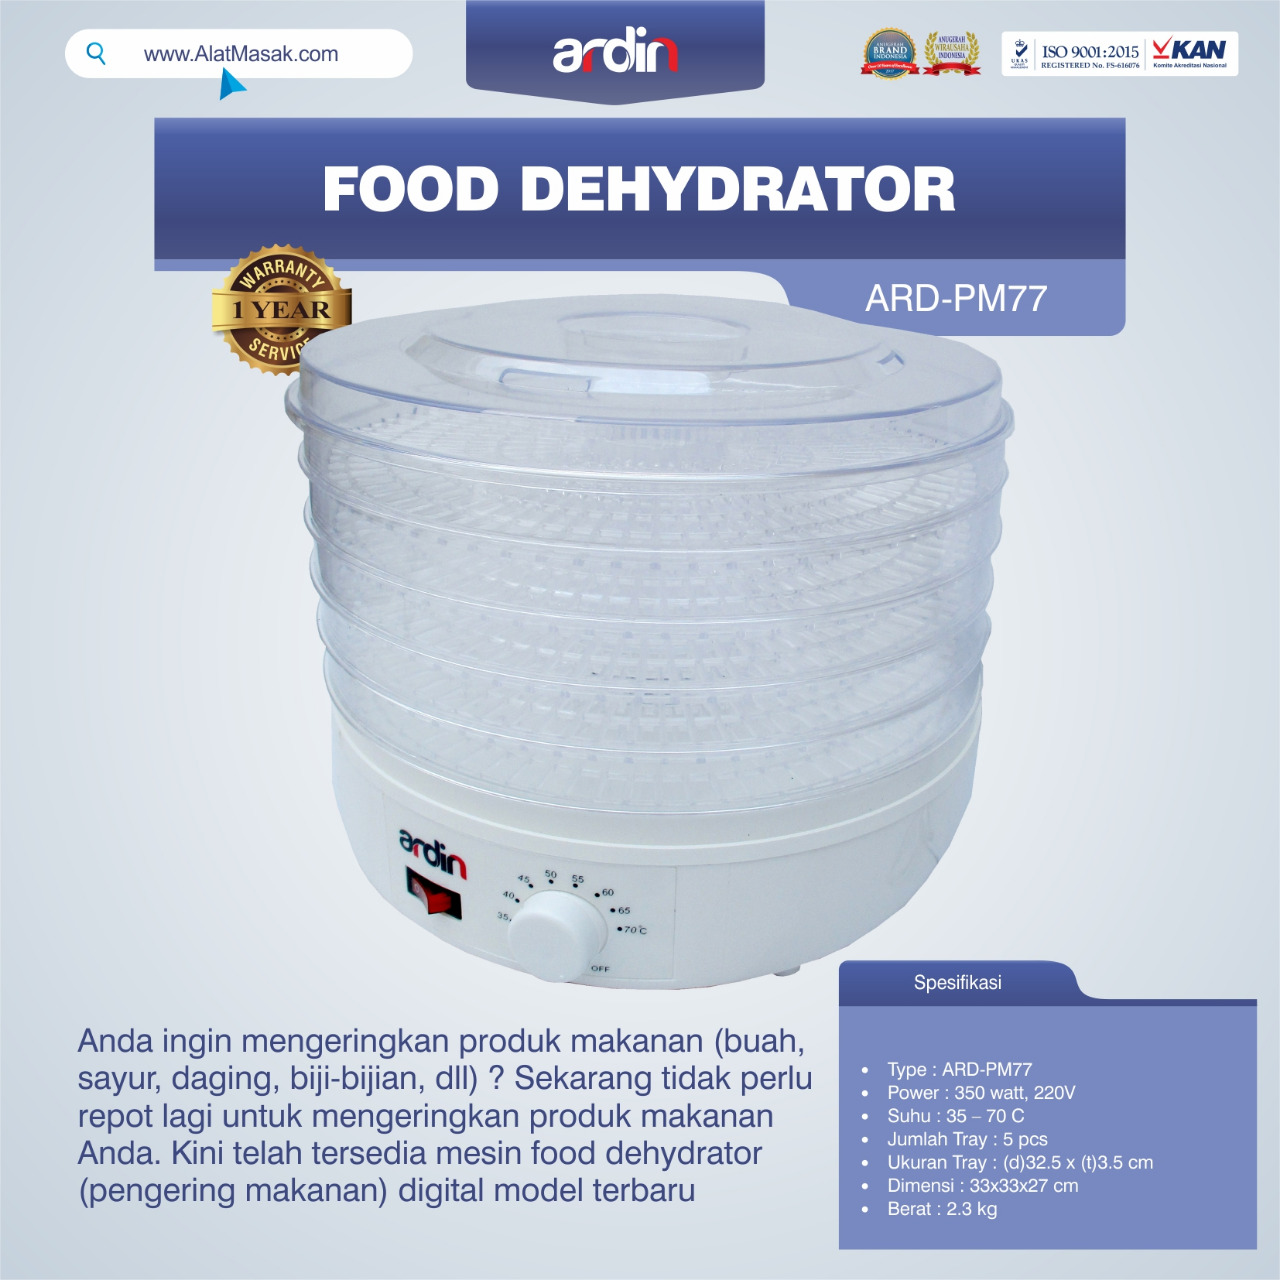 Jual Food Dehydrator ARD-PM77 di Jakarta